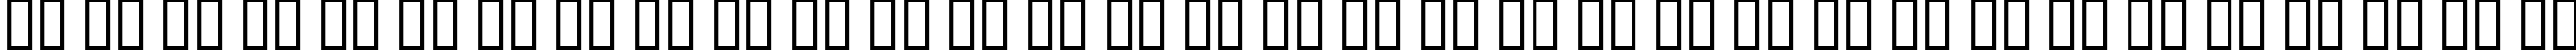 Пример написания русского алфавита шрифтом Elgethy Est Bold Condensed